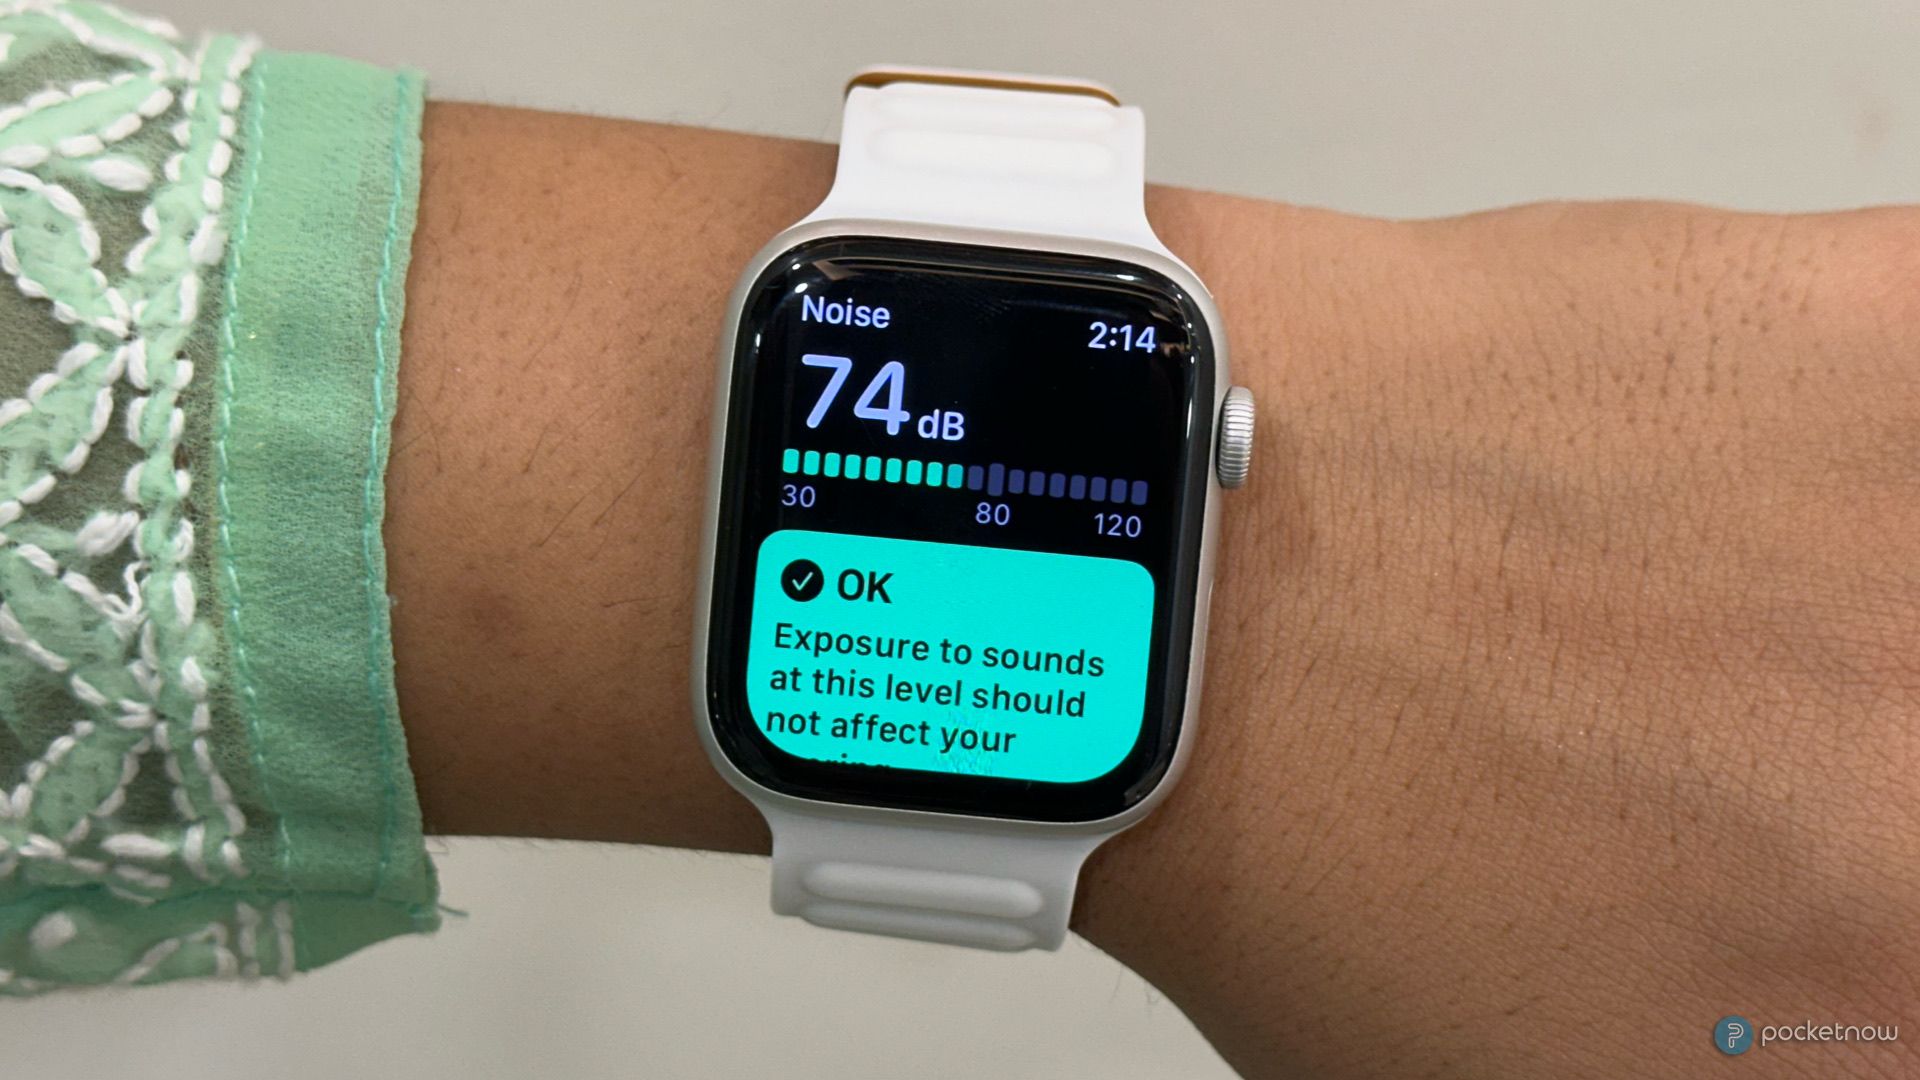 Apple Watch noise app hands-on